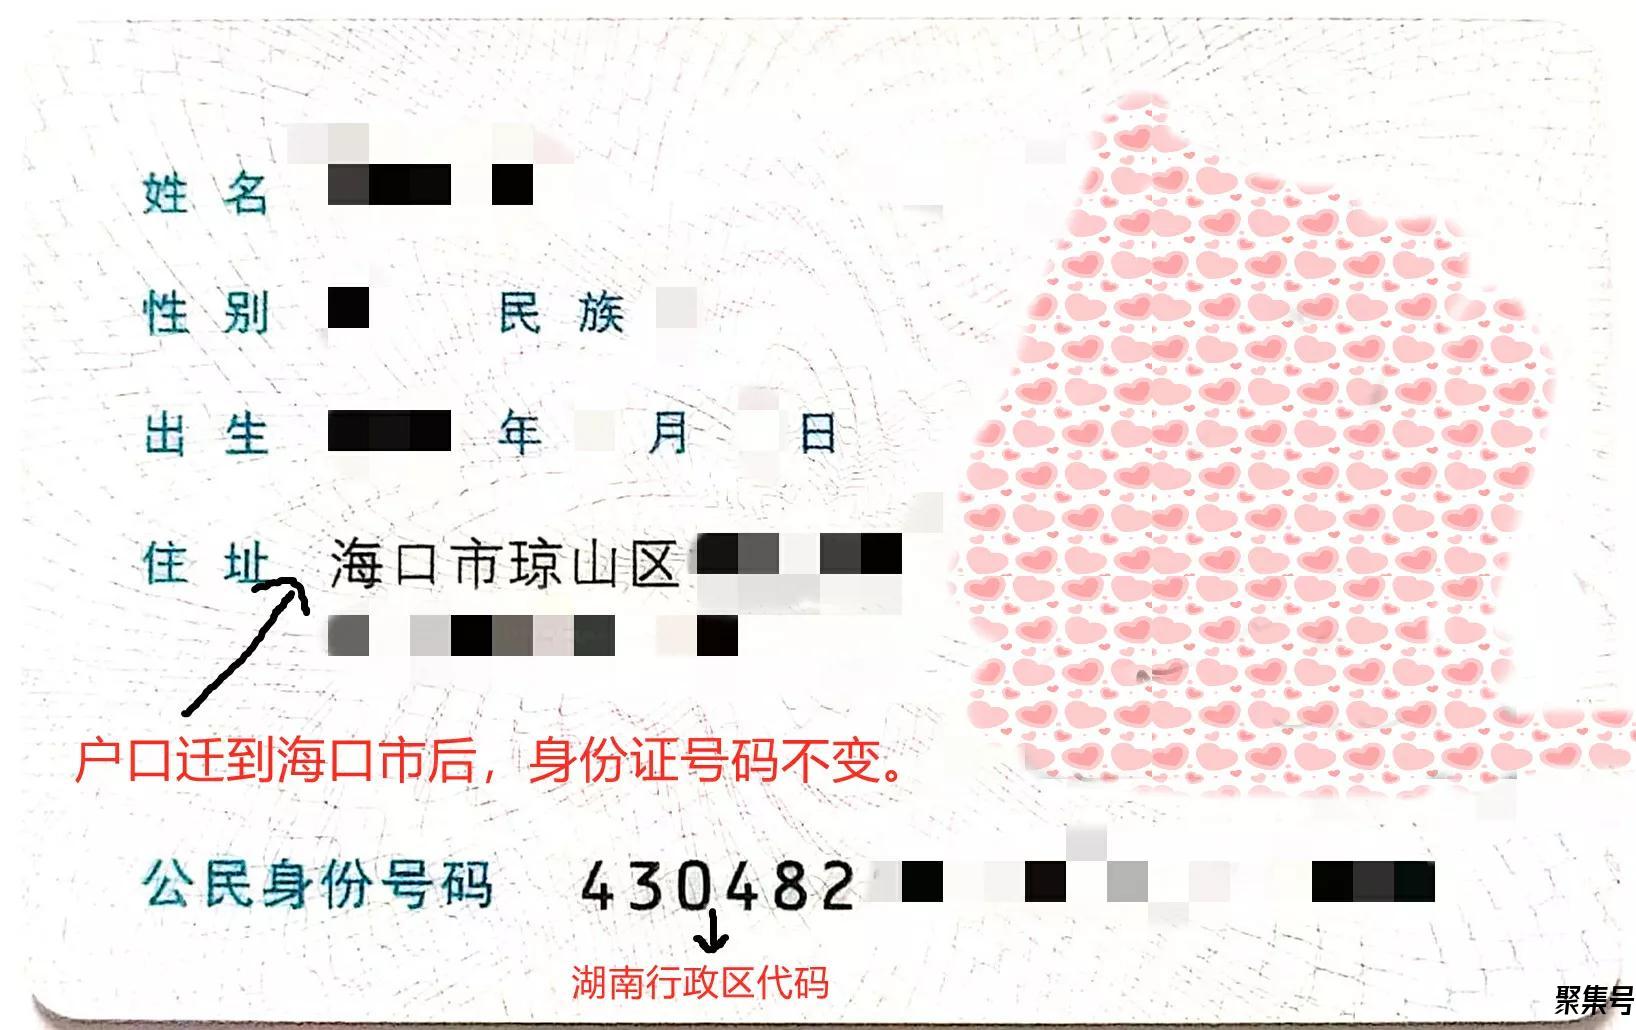 居民身份证号码_互动百科